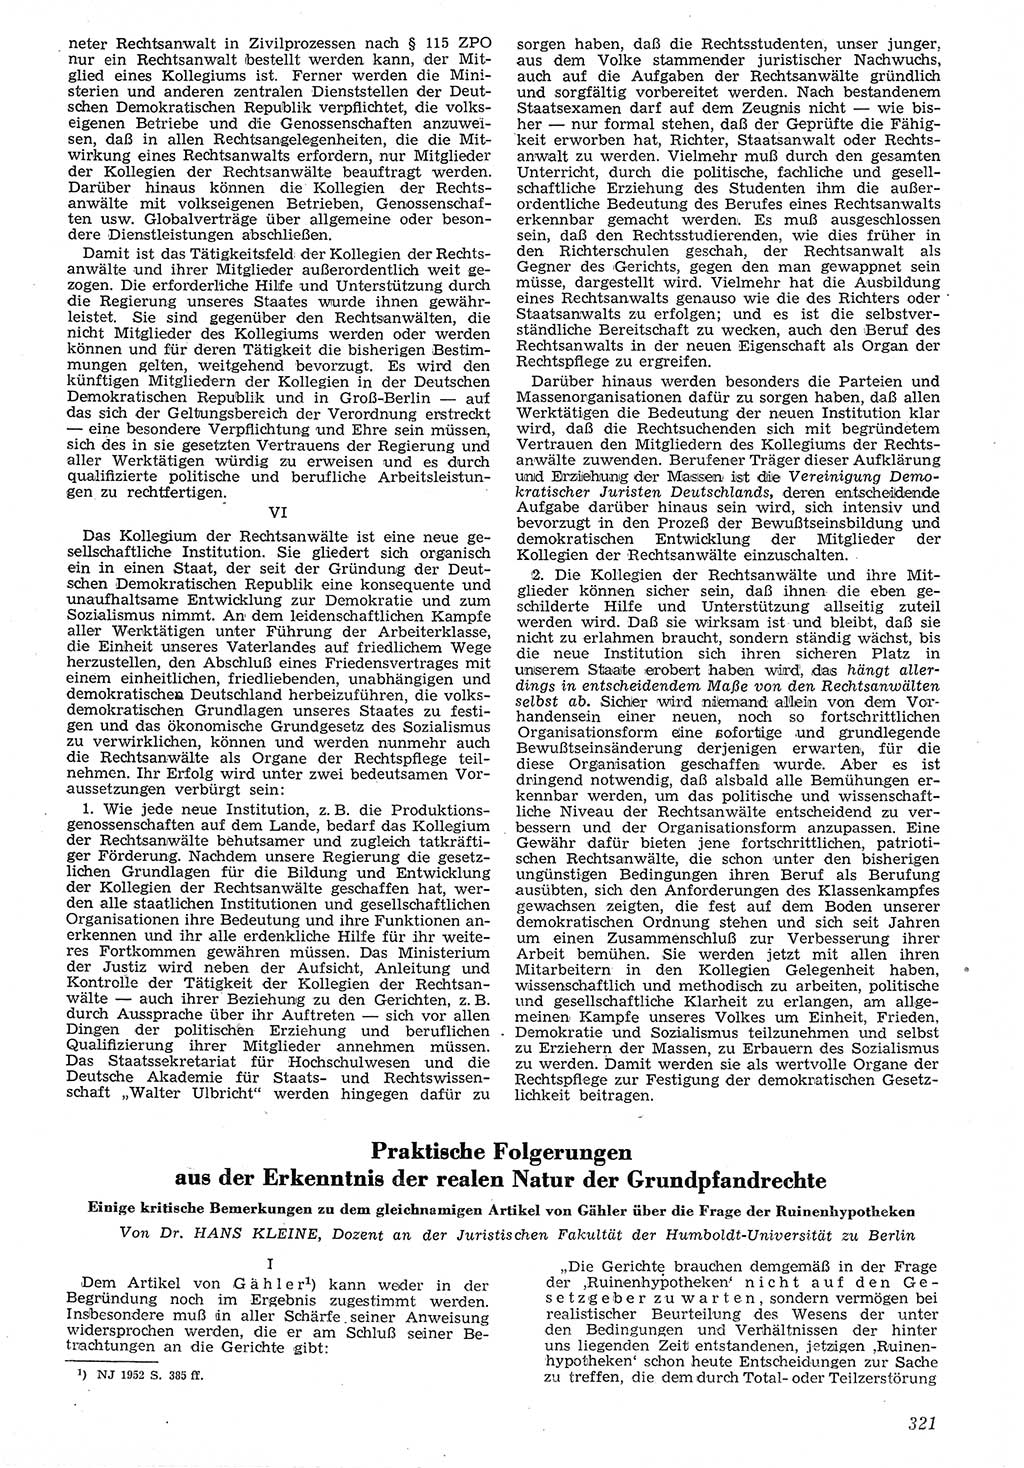 Neue Justiz (NJ), Zeitschrift für Recht und Rechtswissenschaft [Deutsche Demokratische Republik (DDR)], 7. Jahrgang 1953, Seite 321 (NJ DDR 1953, S. 321)